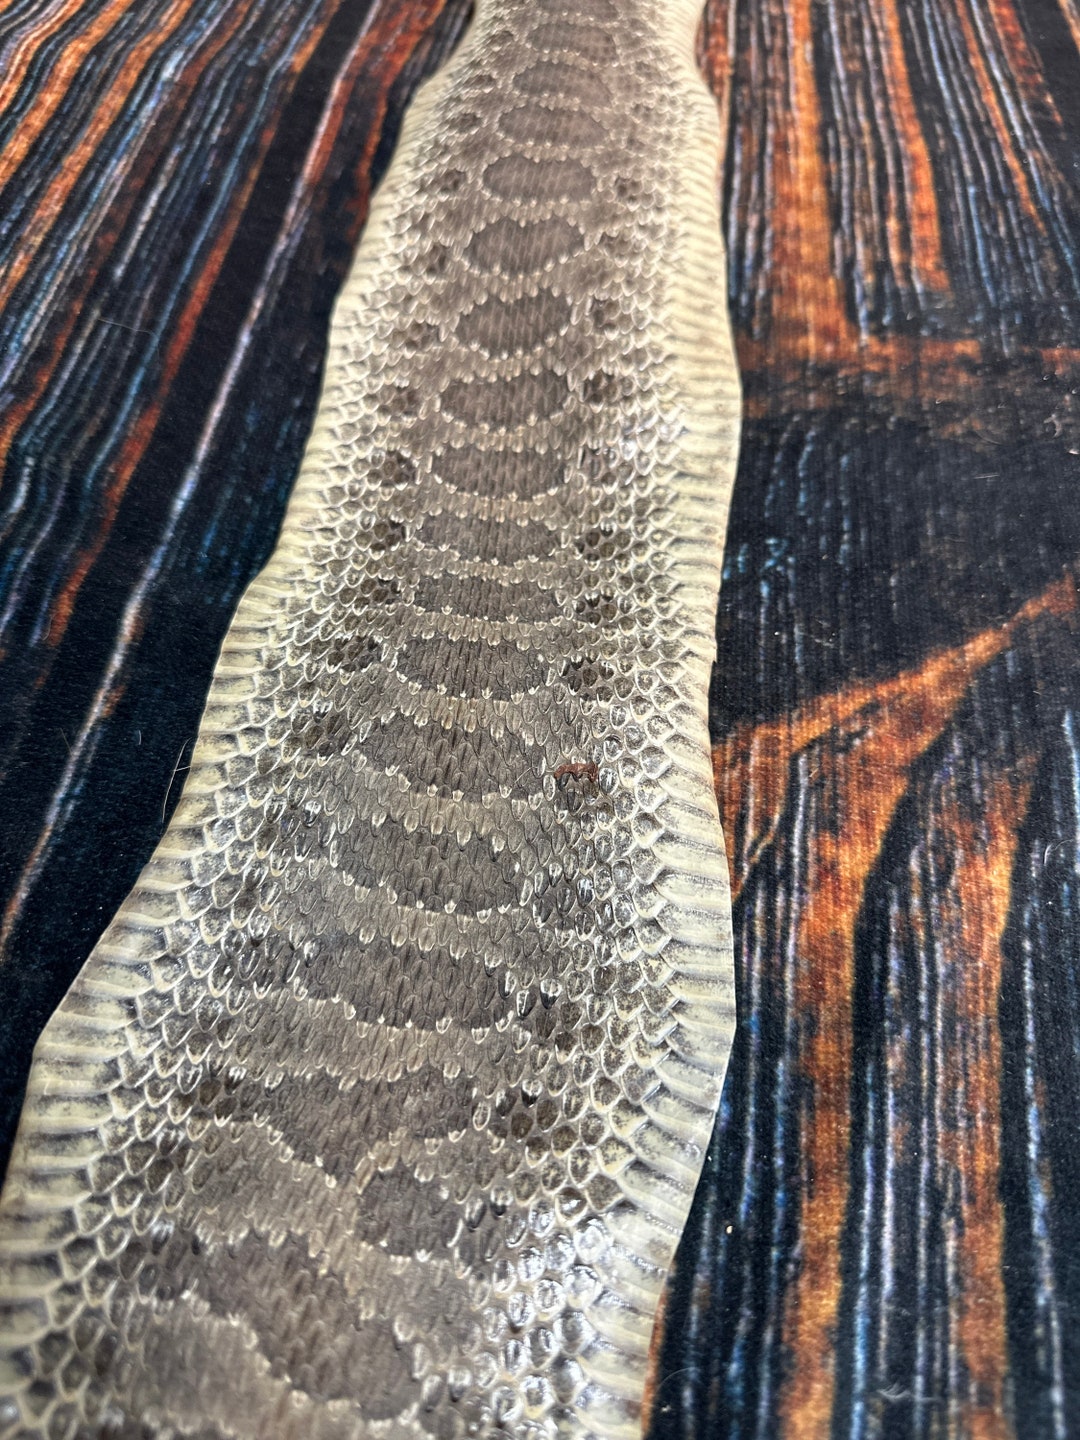 REAL Rattlesnake Skin Prairie Rattler Hide Dry Tanned Bow Wrap - Etsy